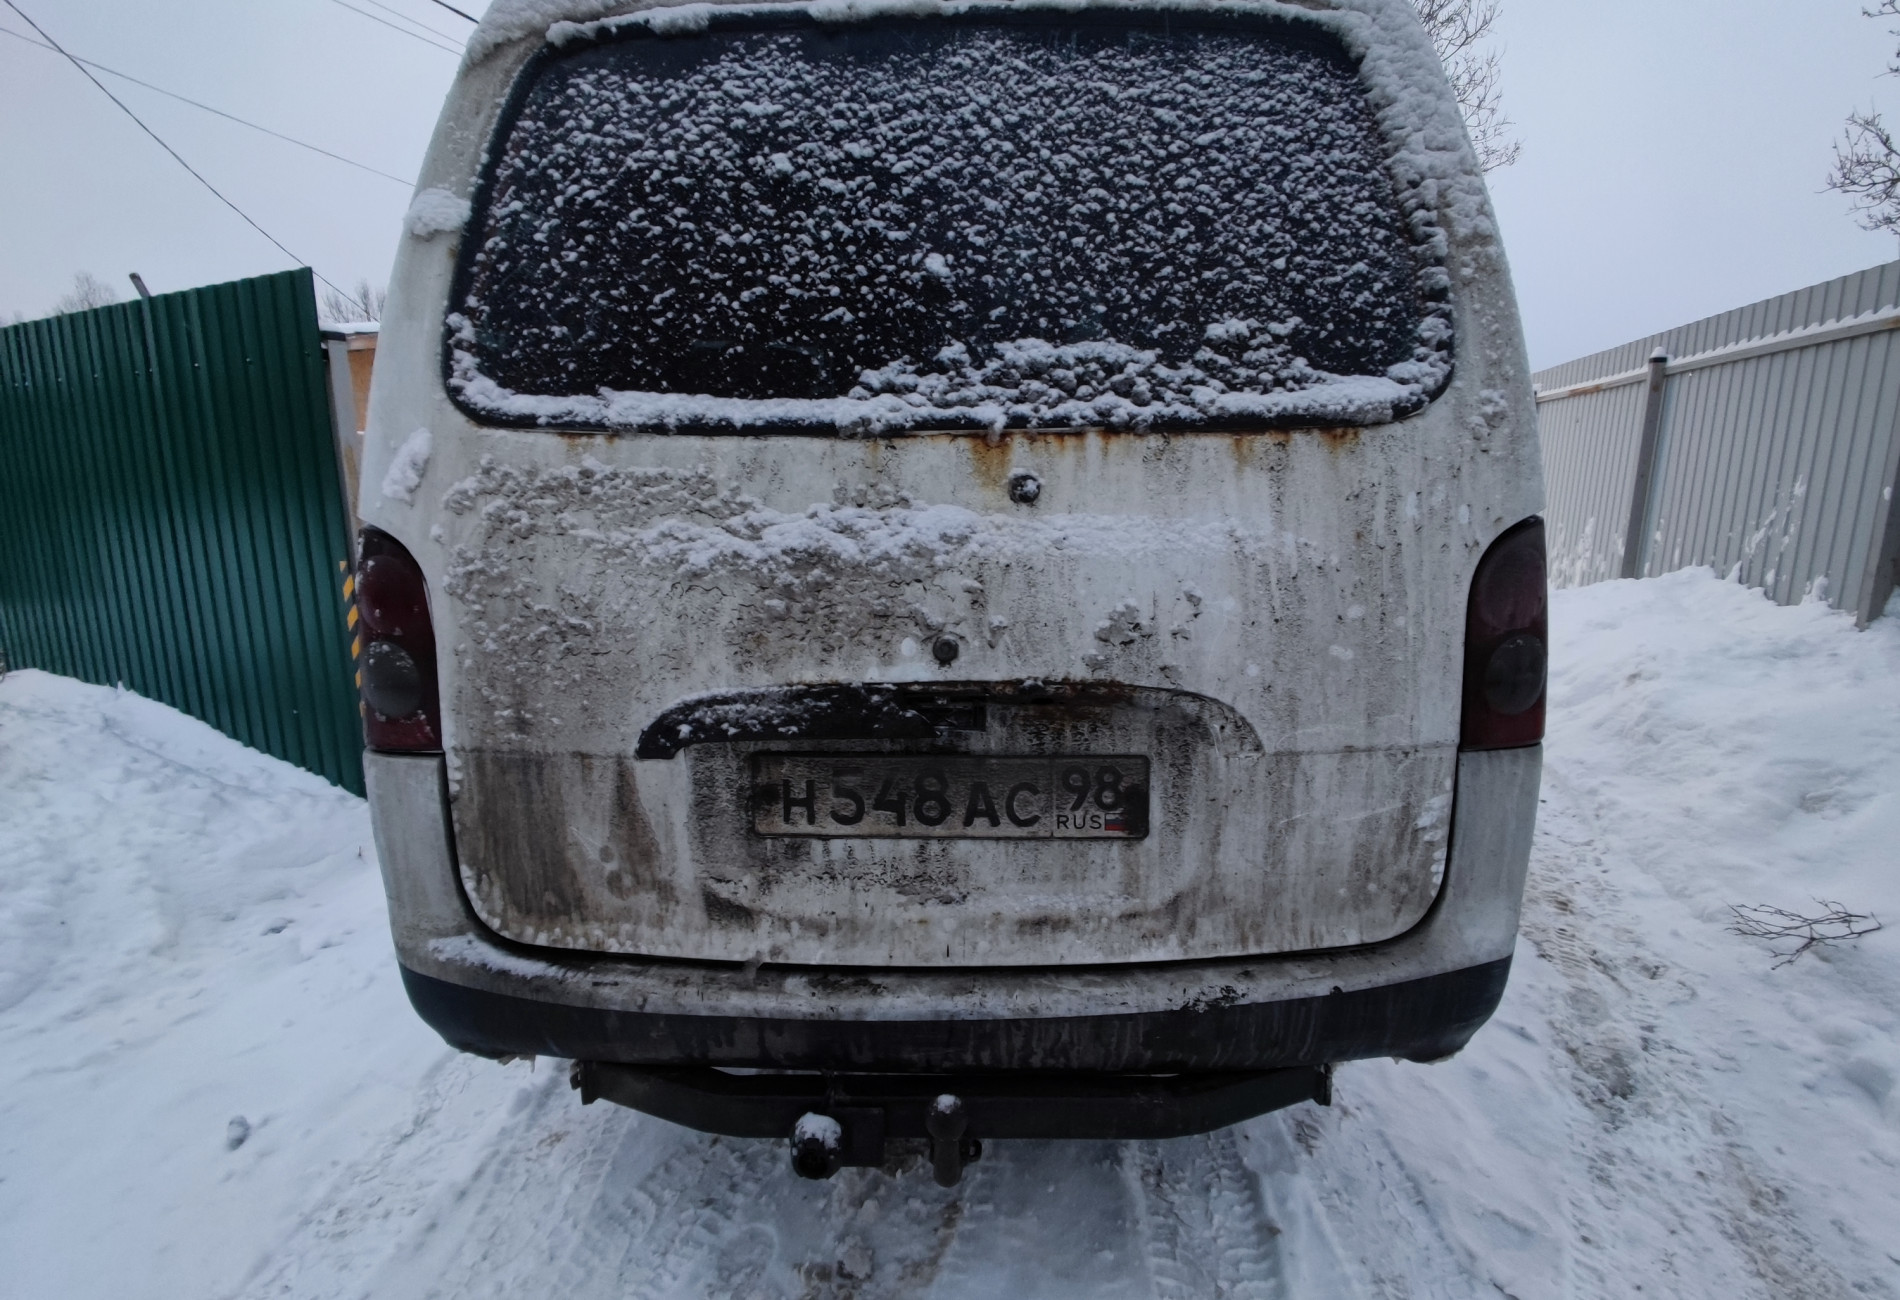 Аренда hyundai h1 эконом класса 2000 года в городе Москва Проспект Ветеранов от 1680 руб./сутки, задний привод, двигатель: дизель, объем 2.5 литров, без водителя, недорого, вид 3 - RentRide